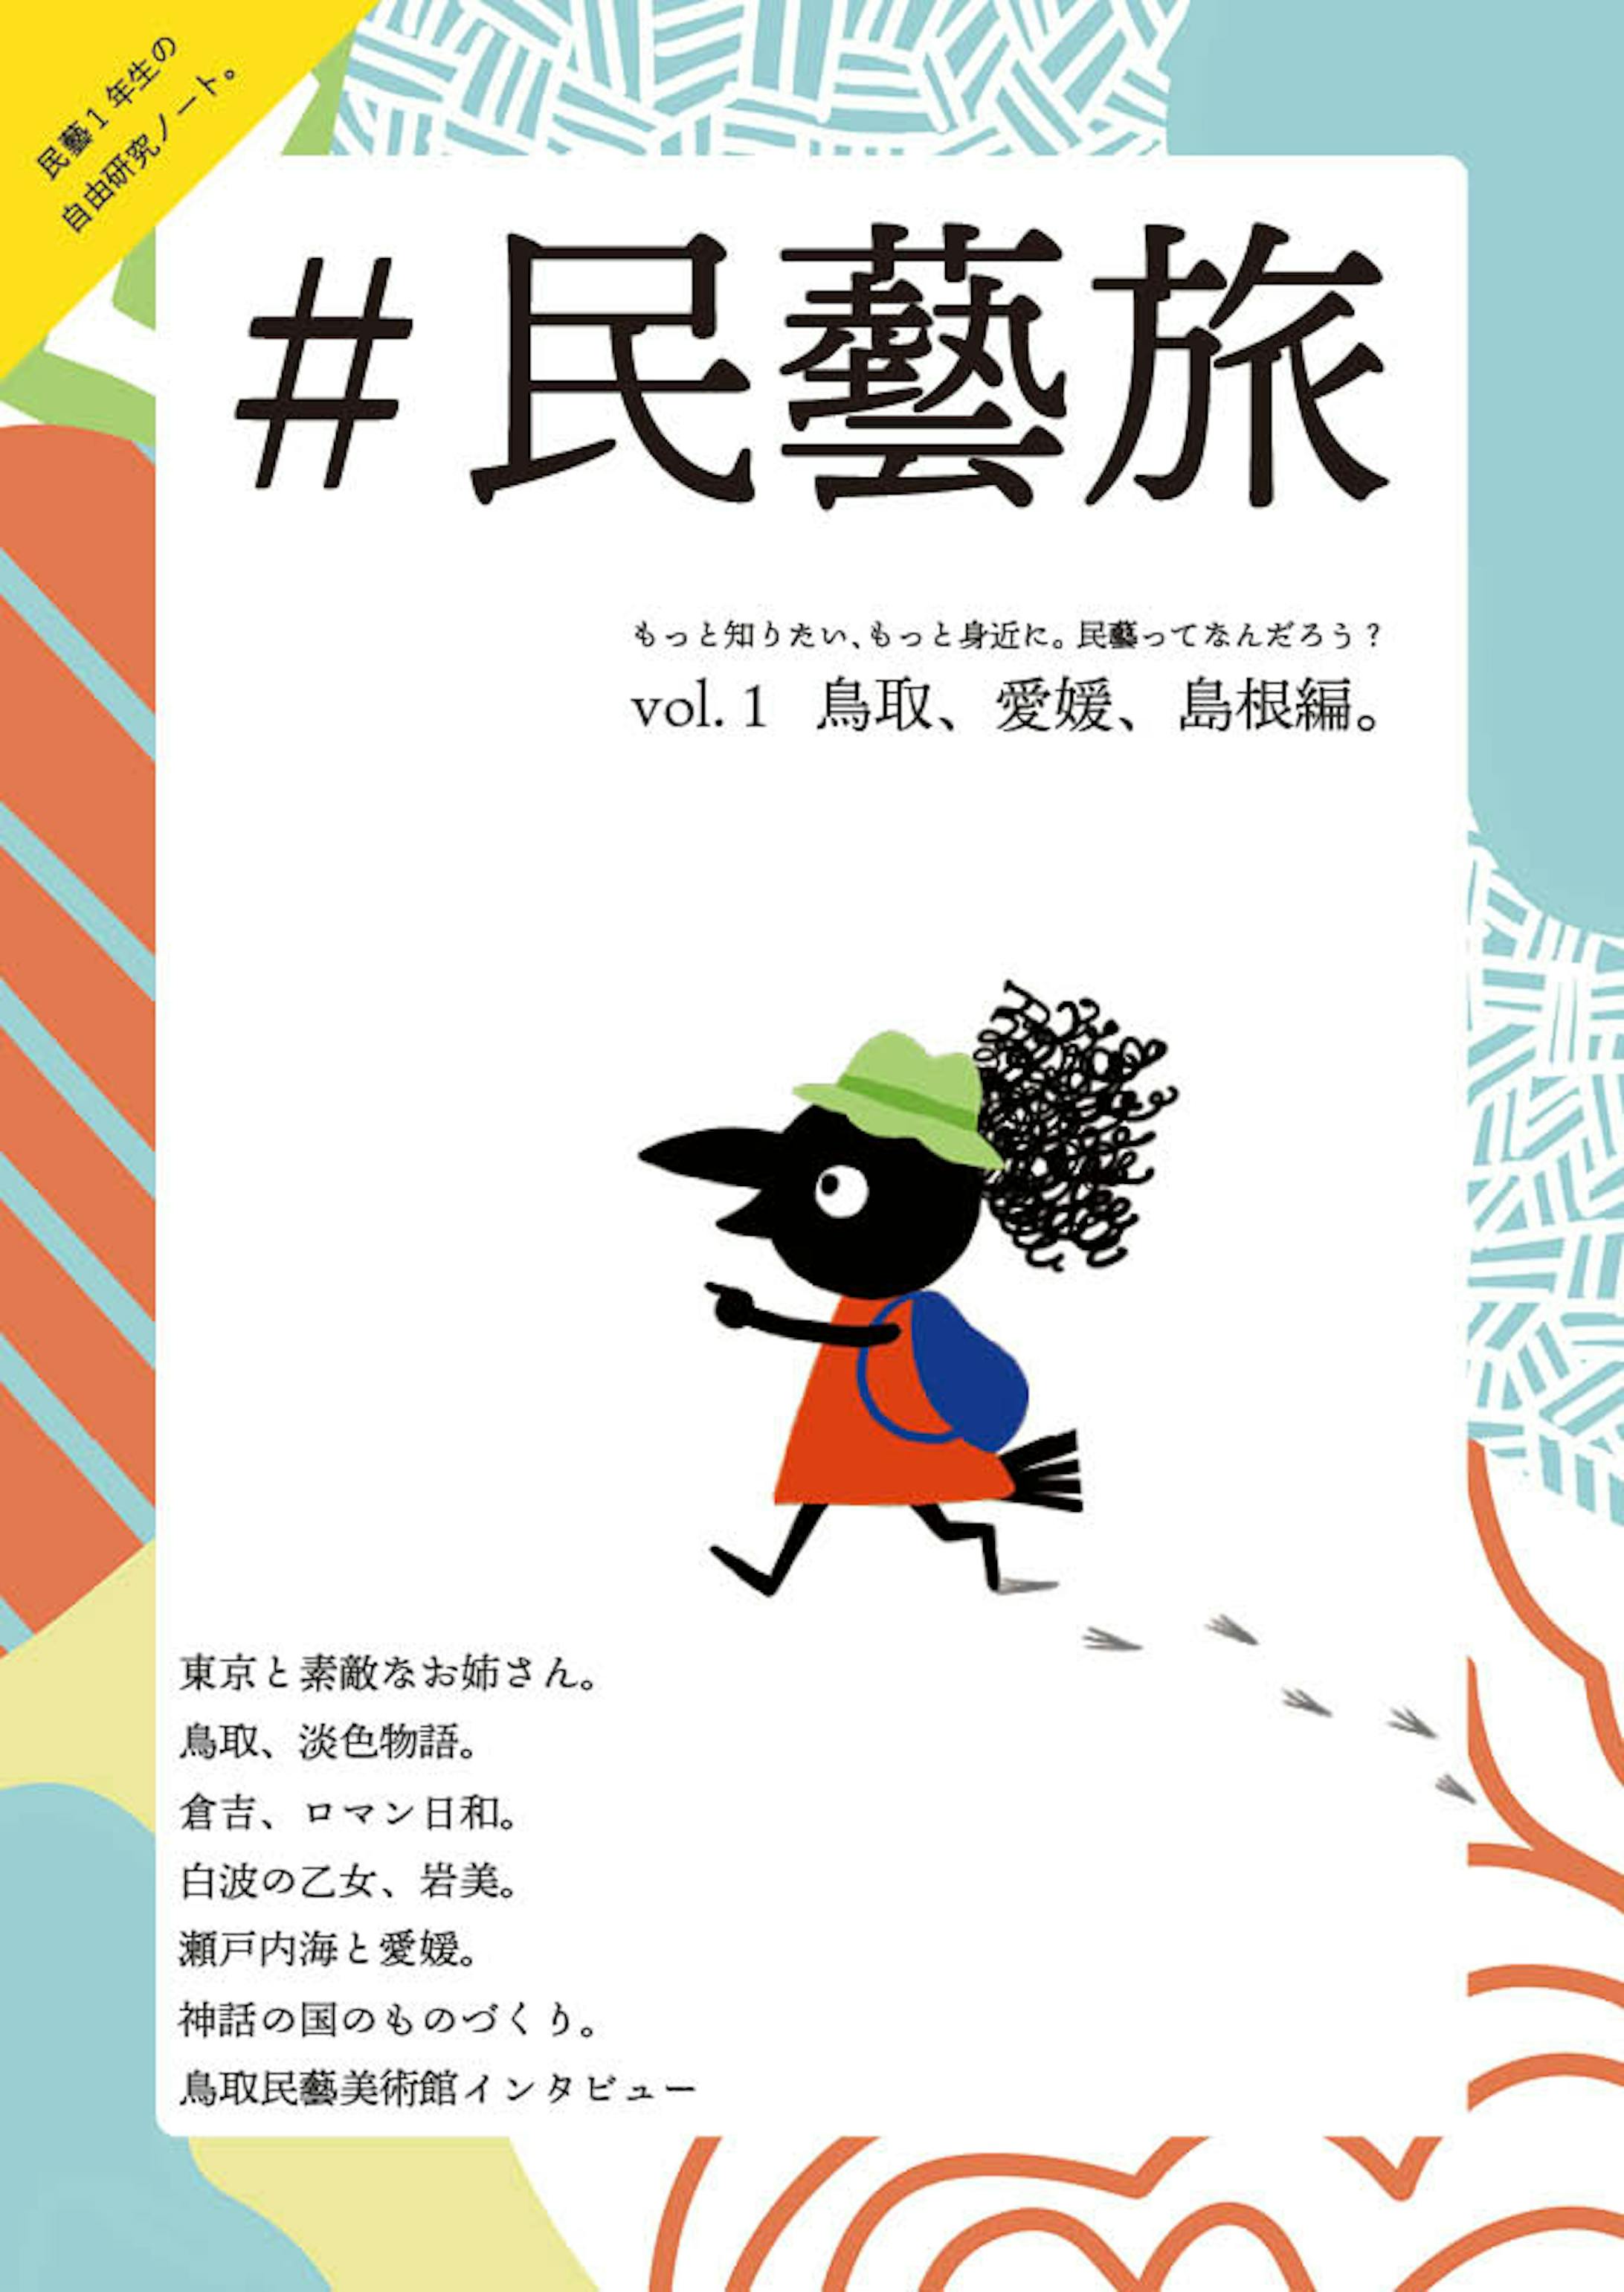 #民藝旅 vol.1 鳥取、愛媛、島根（旅行記 雑誌）-1